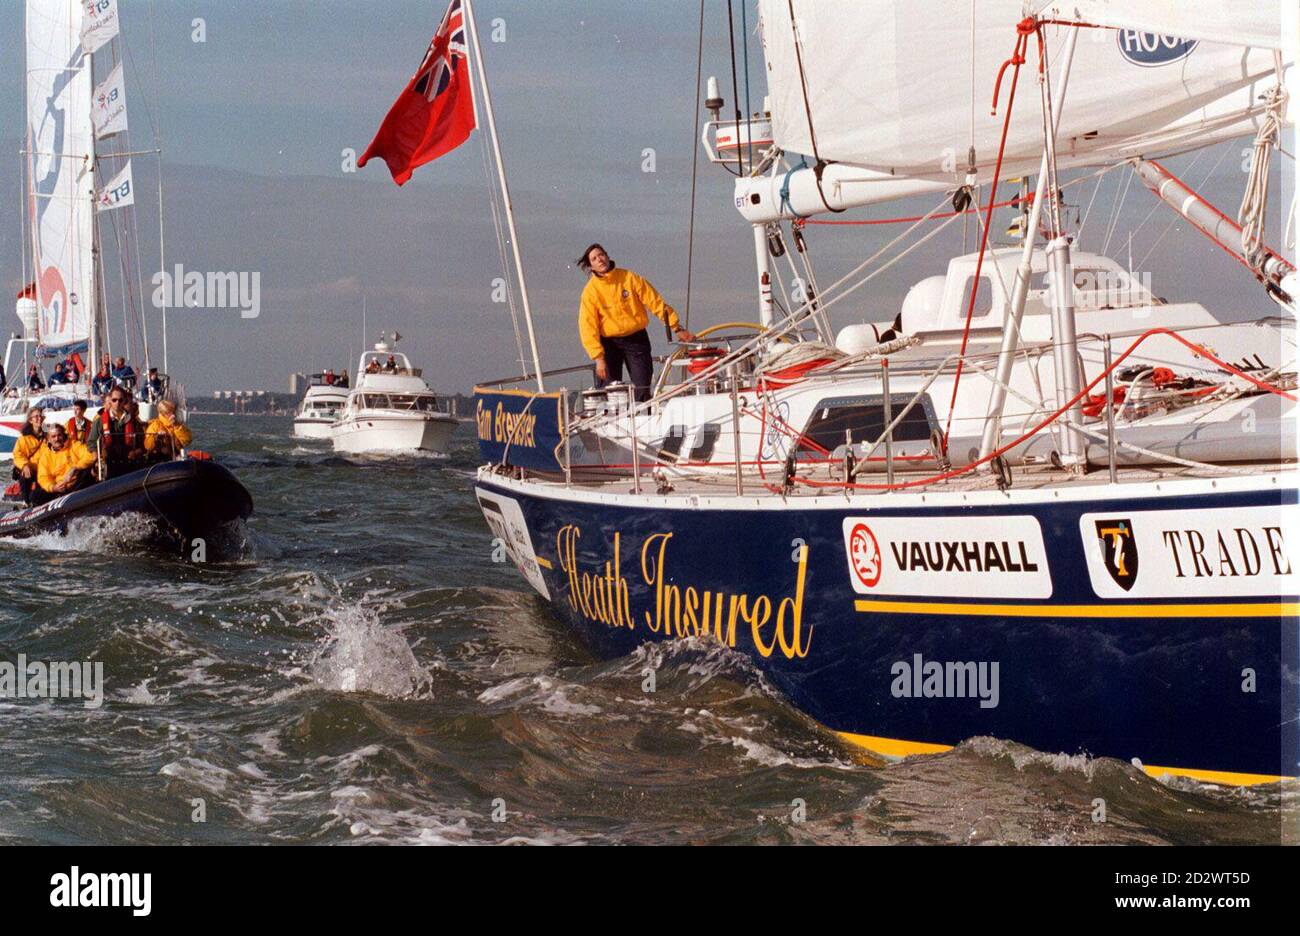 Solo-Yatchswoman Samantha Brewster beginnt ihren Rekordversuch, um die Welt zu segeln (Ost nach West, gegen die vorherrschenden Winde). Bild beim Überqueren der Startlinie auf Southampton Water zu Beginn ihrer Reise. Stockfoto